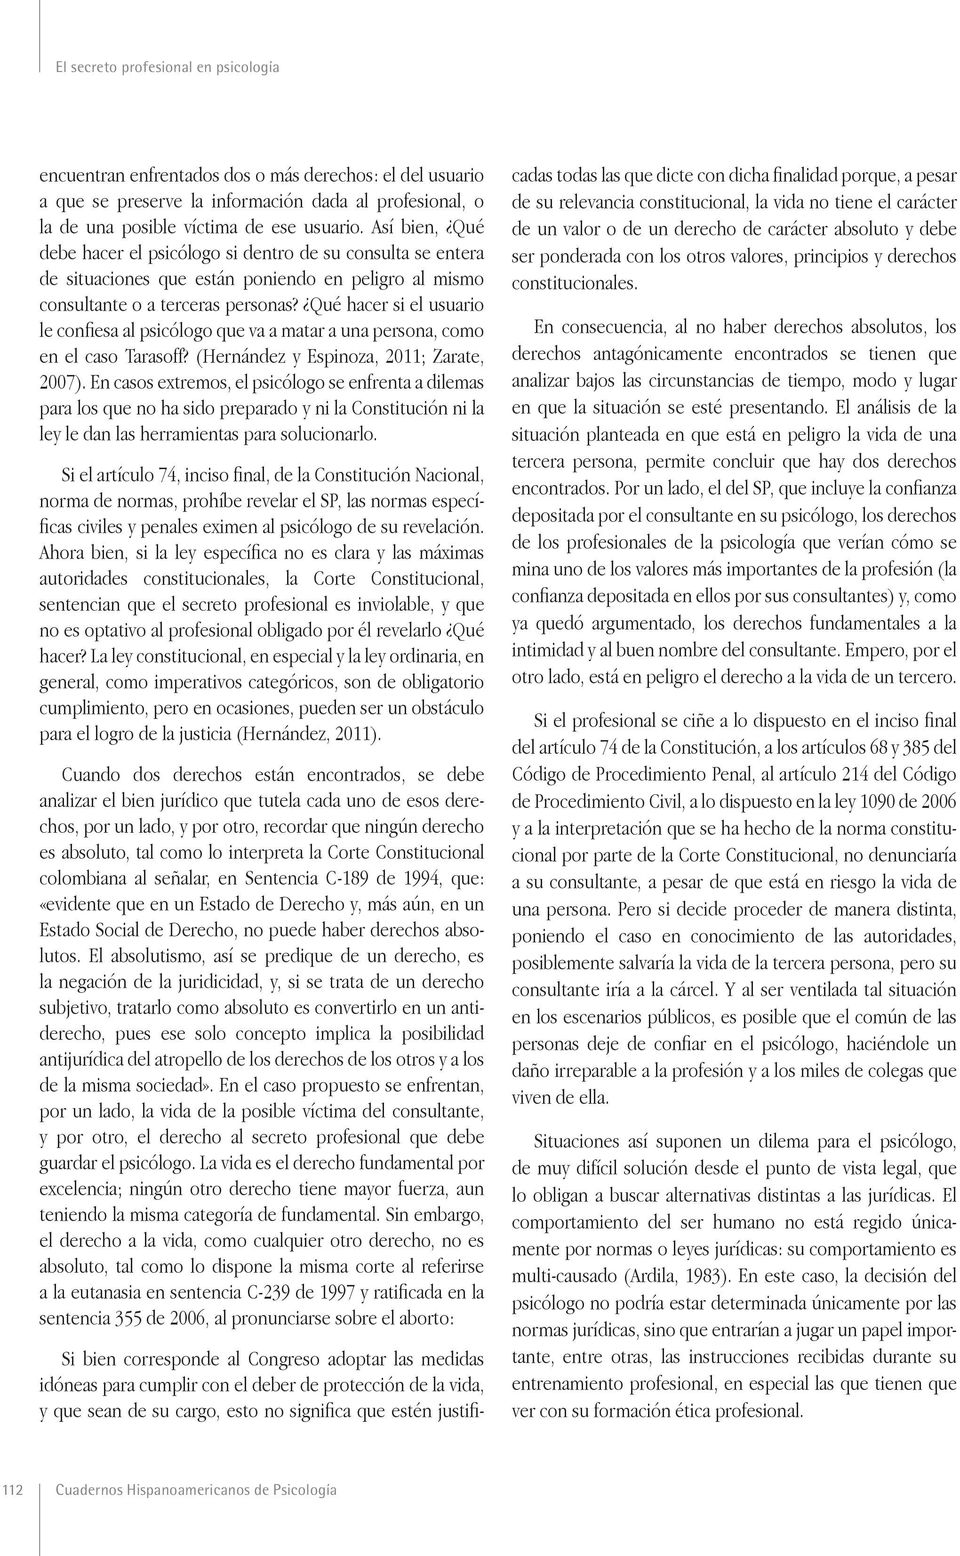 Qué hacer si el usuario le confiesa al psicólogo que va a matar a una persona, como en el caso Tarasoff? (Hernández y Espinoza, 2011; Zarate, 2007).